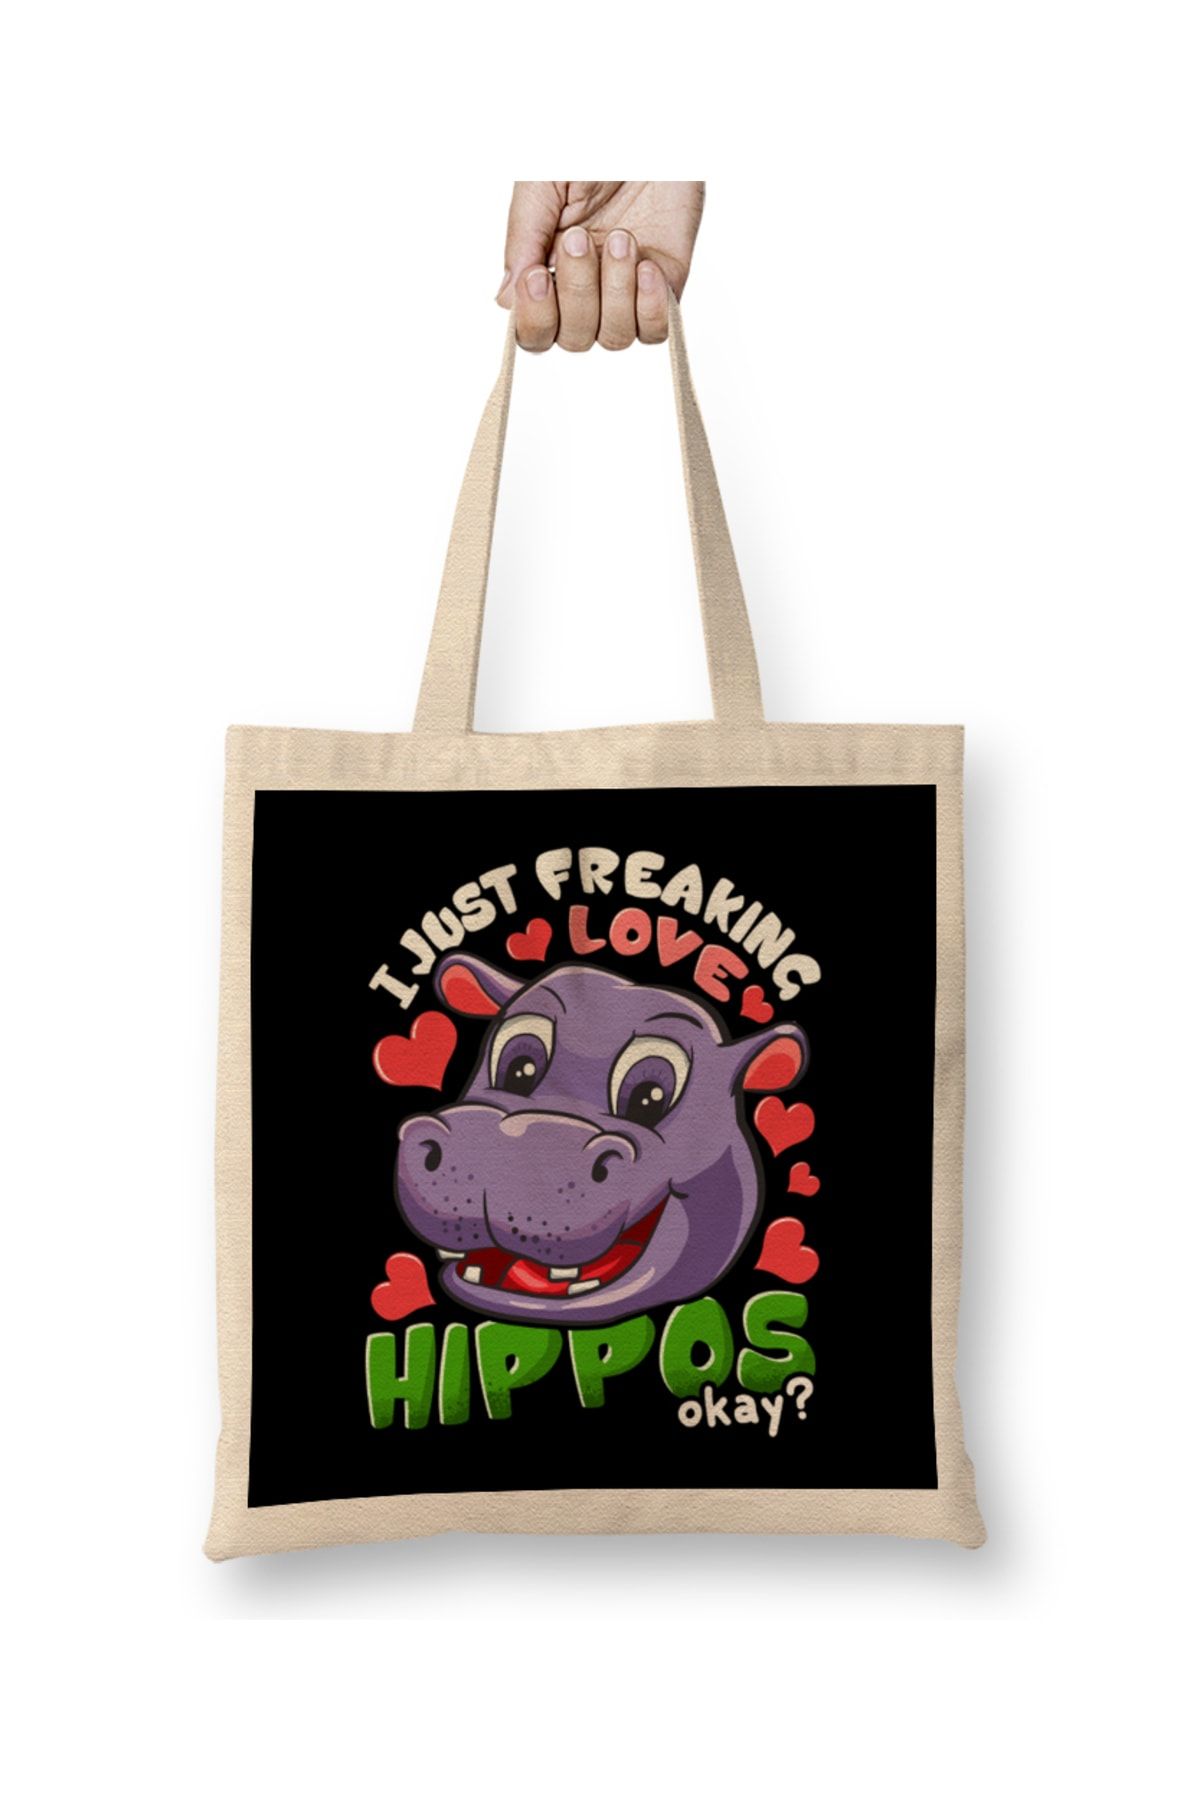 Baskı Dükkanı Cute I Just Freaking Love Hippos, Okay Baby Hippo Bez Çanta Uzun Saplı